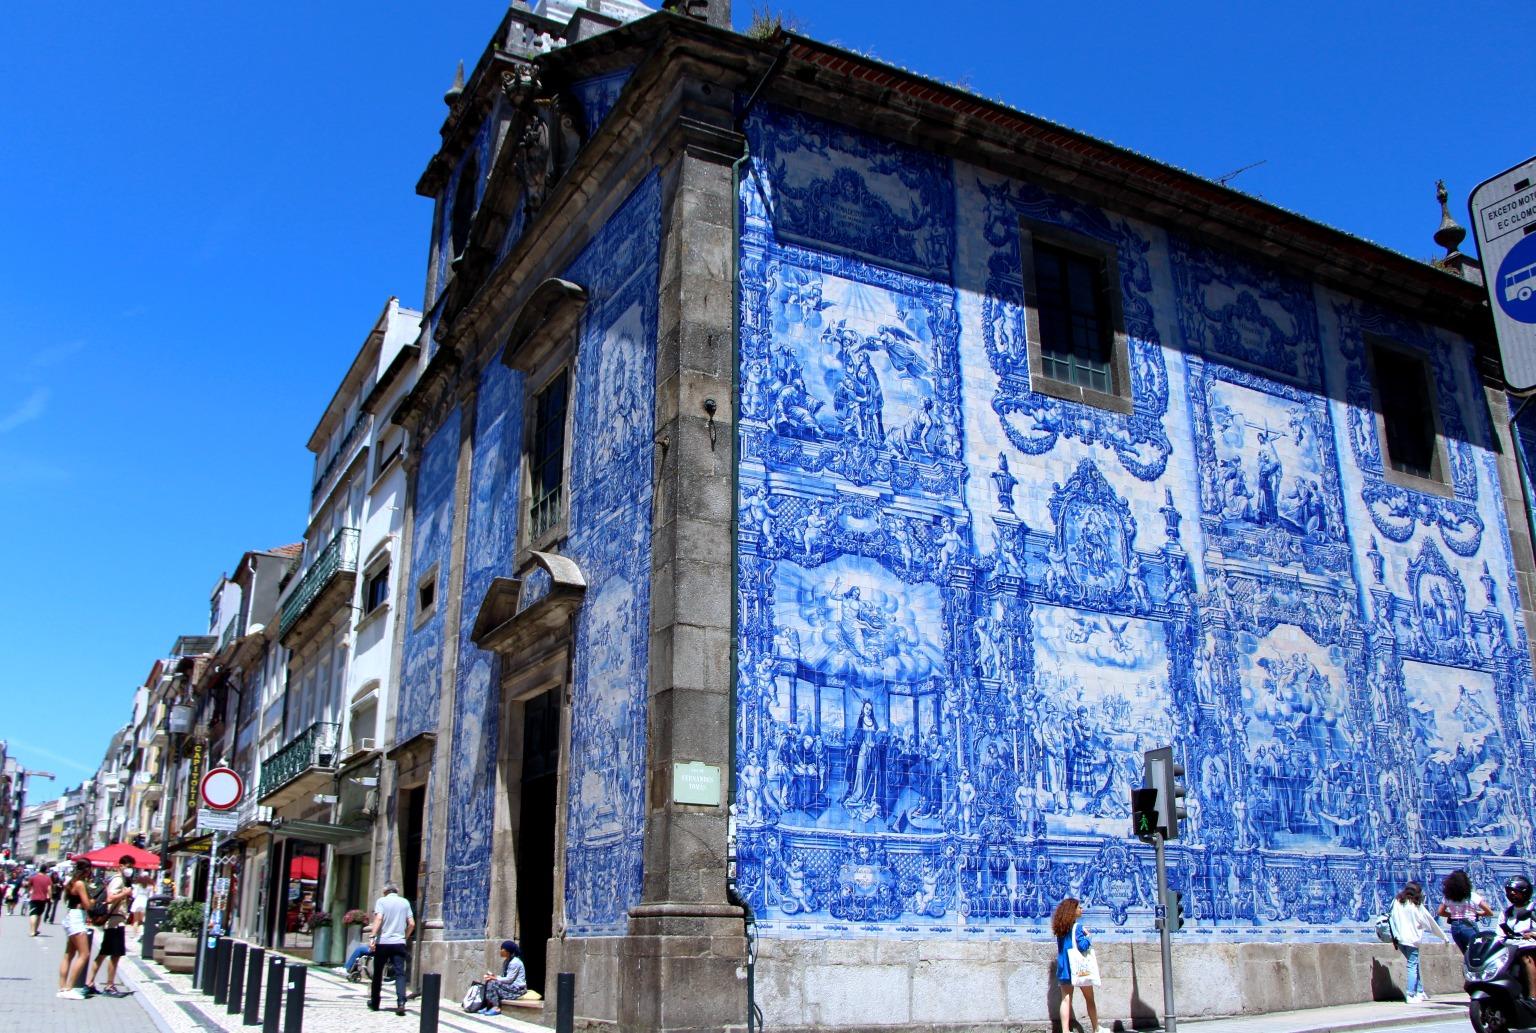 Capela das Almas, adornada con hermosos azulejos, muestra de la maestría artística portuguesa.